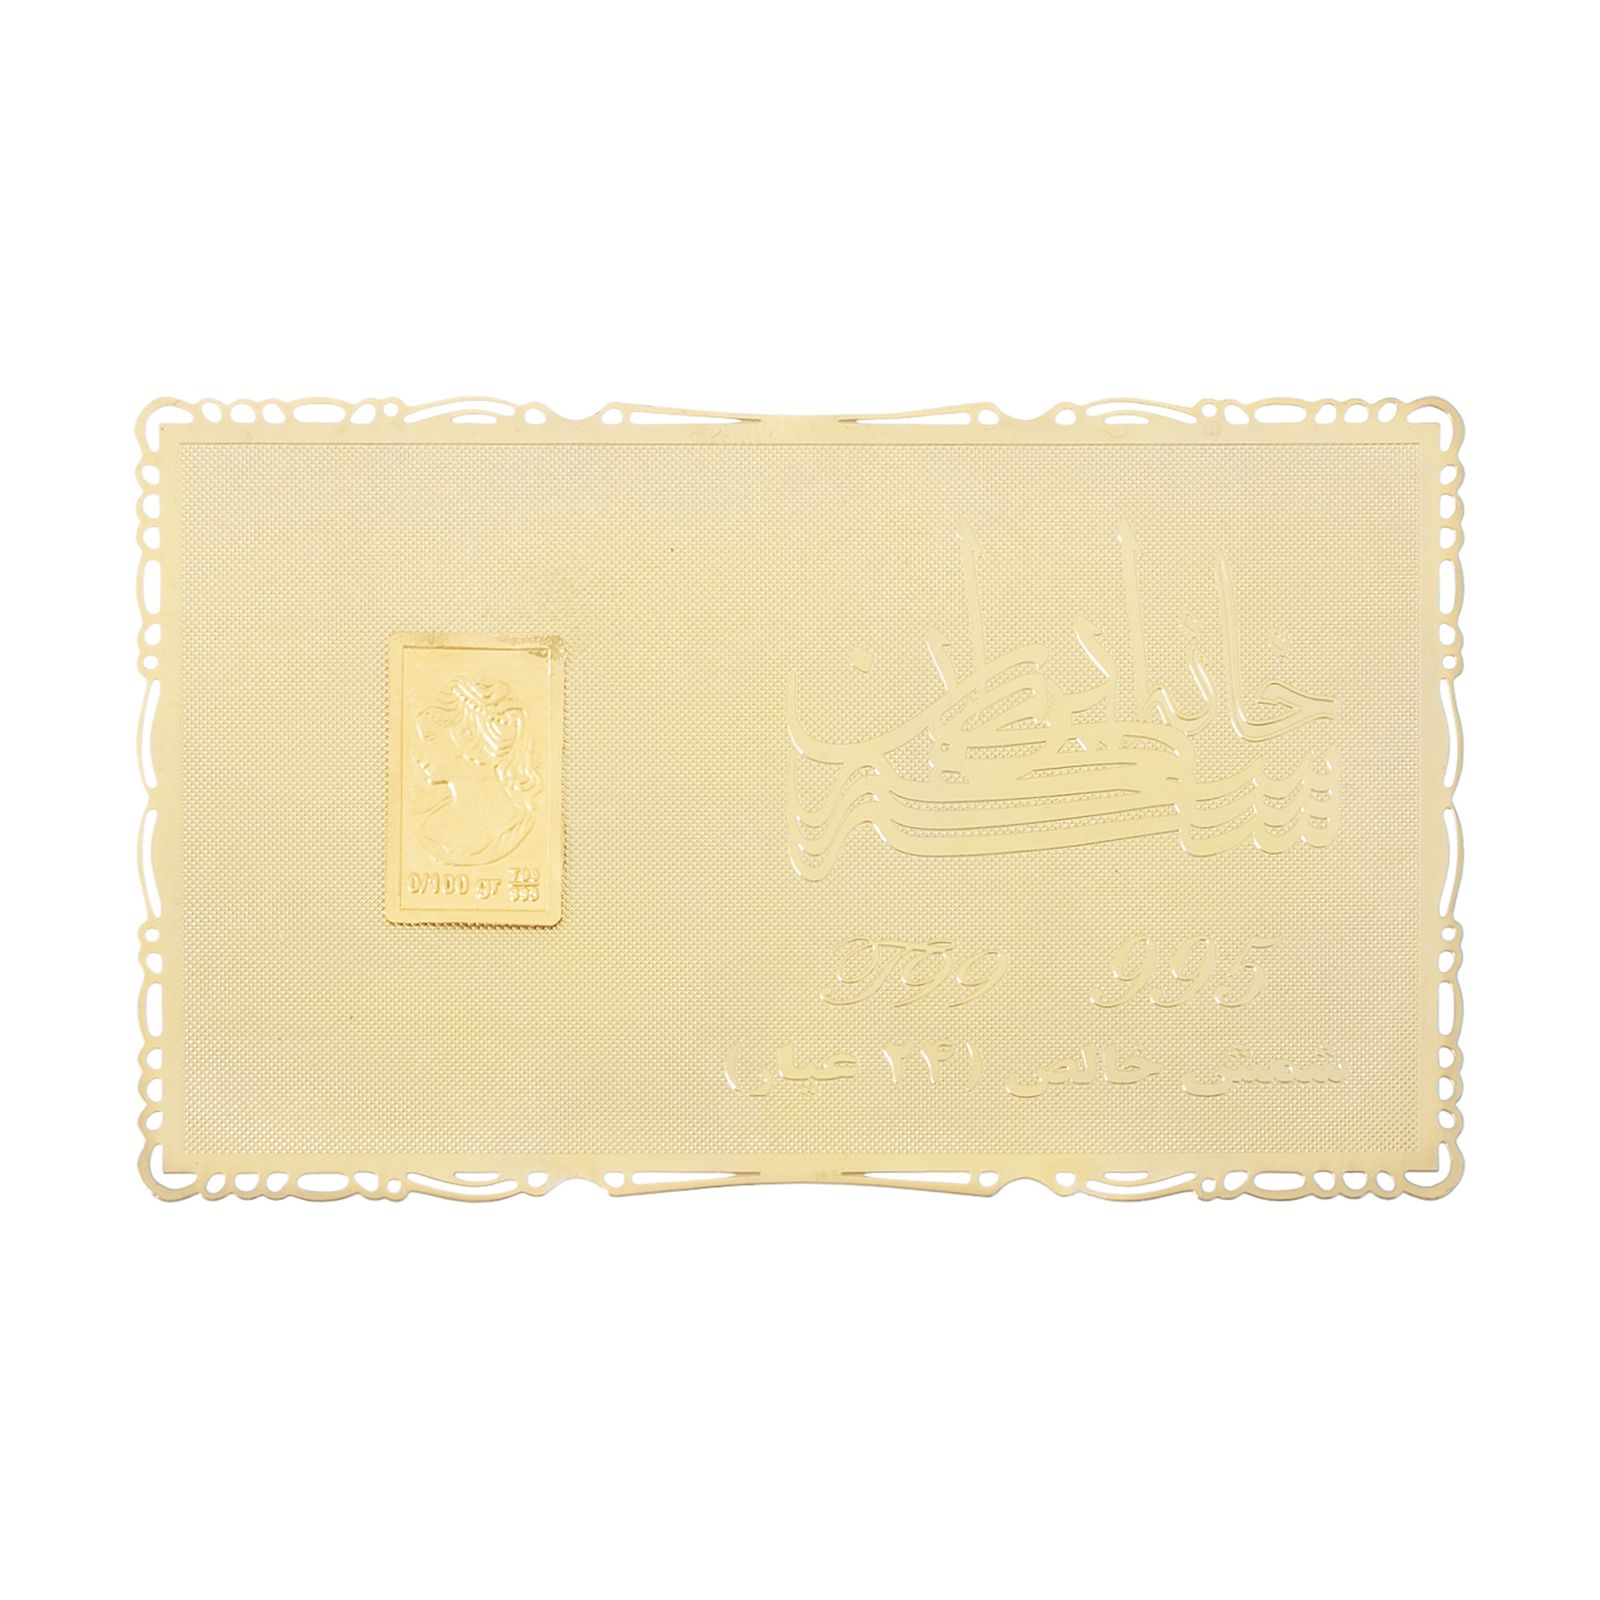 طلا گرمی 24 عیار خانه سکه ایران کد 995 -  - 1